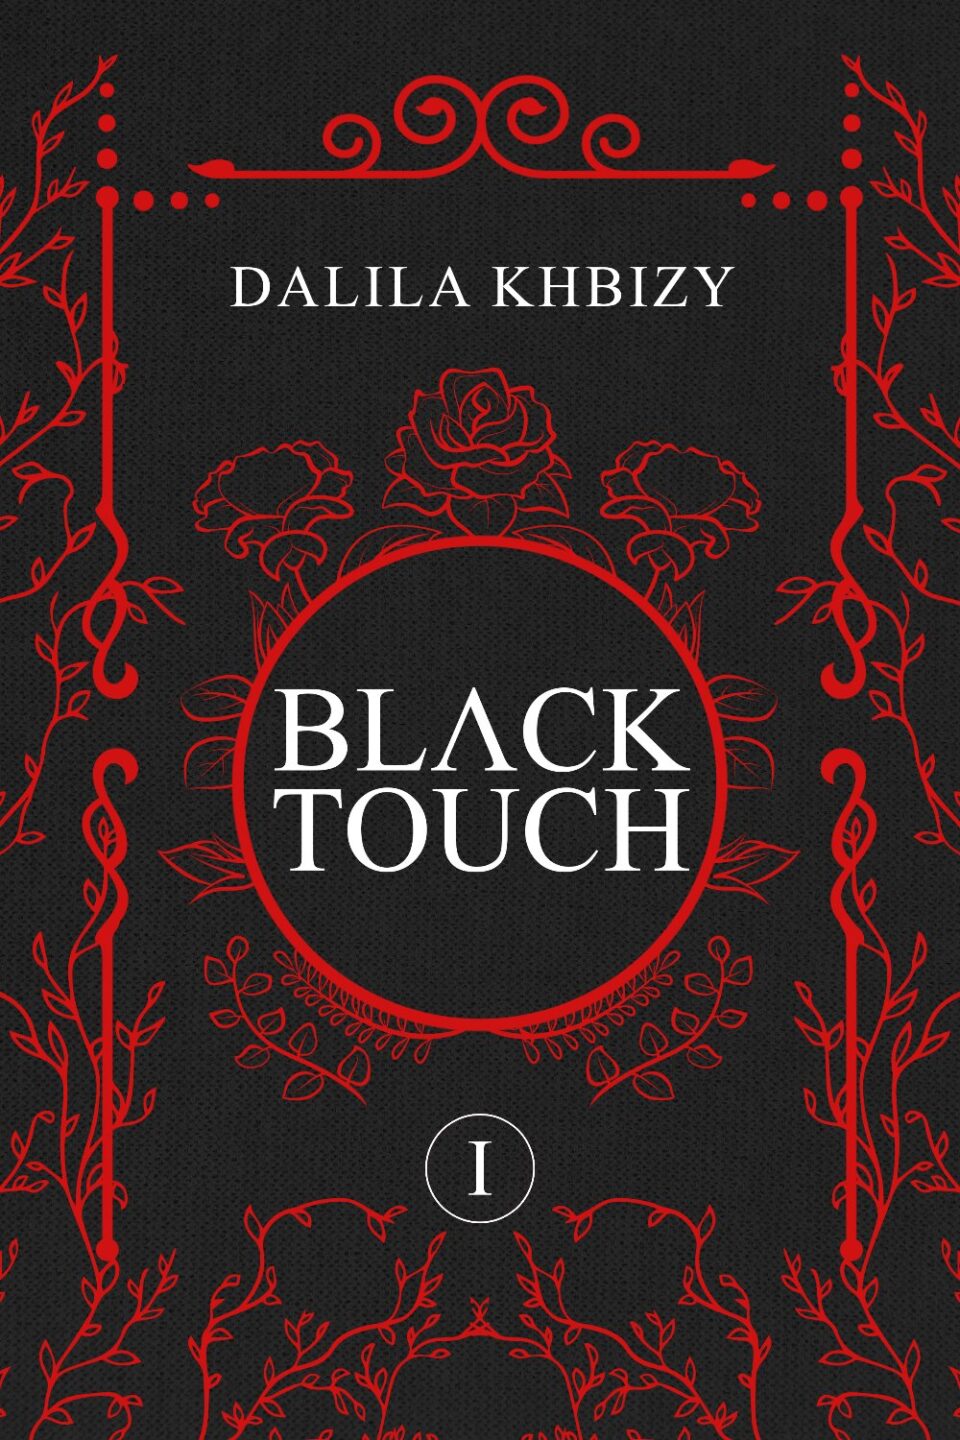 Recensione "Black Touch" di Dalila Khbizy